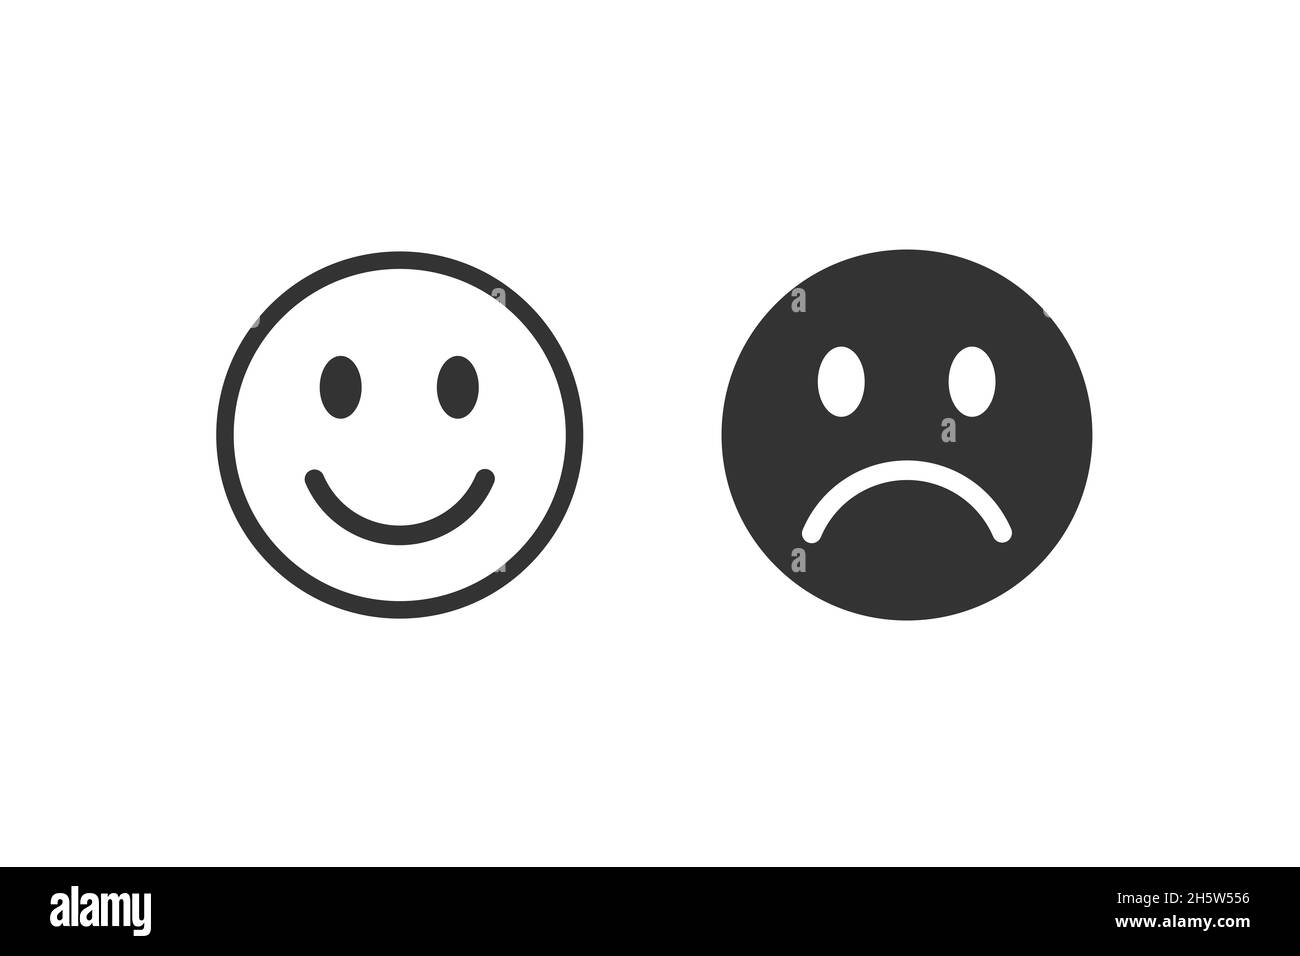 Modernes Emoji-Lächeln. Glücklich, neutral und traurig unglücklich. Emoticon setzte Ikonen, glücklich, neutral, unglücklich traurig Stockfoto